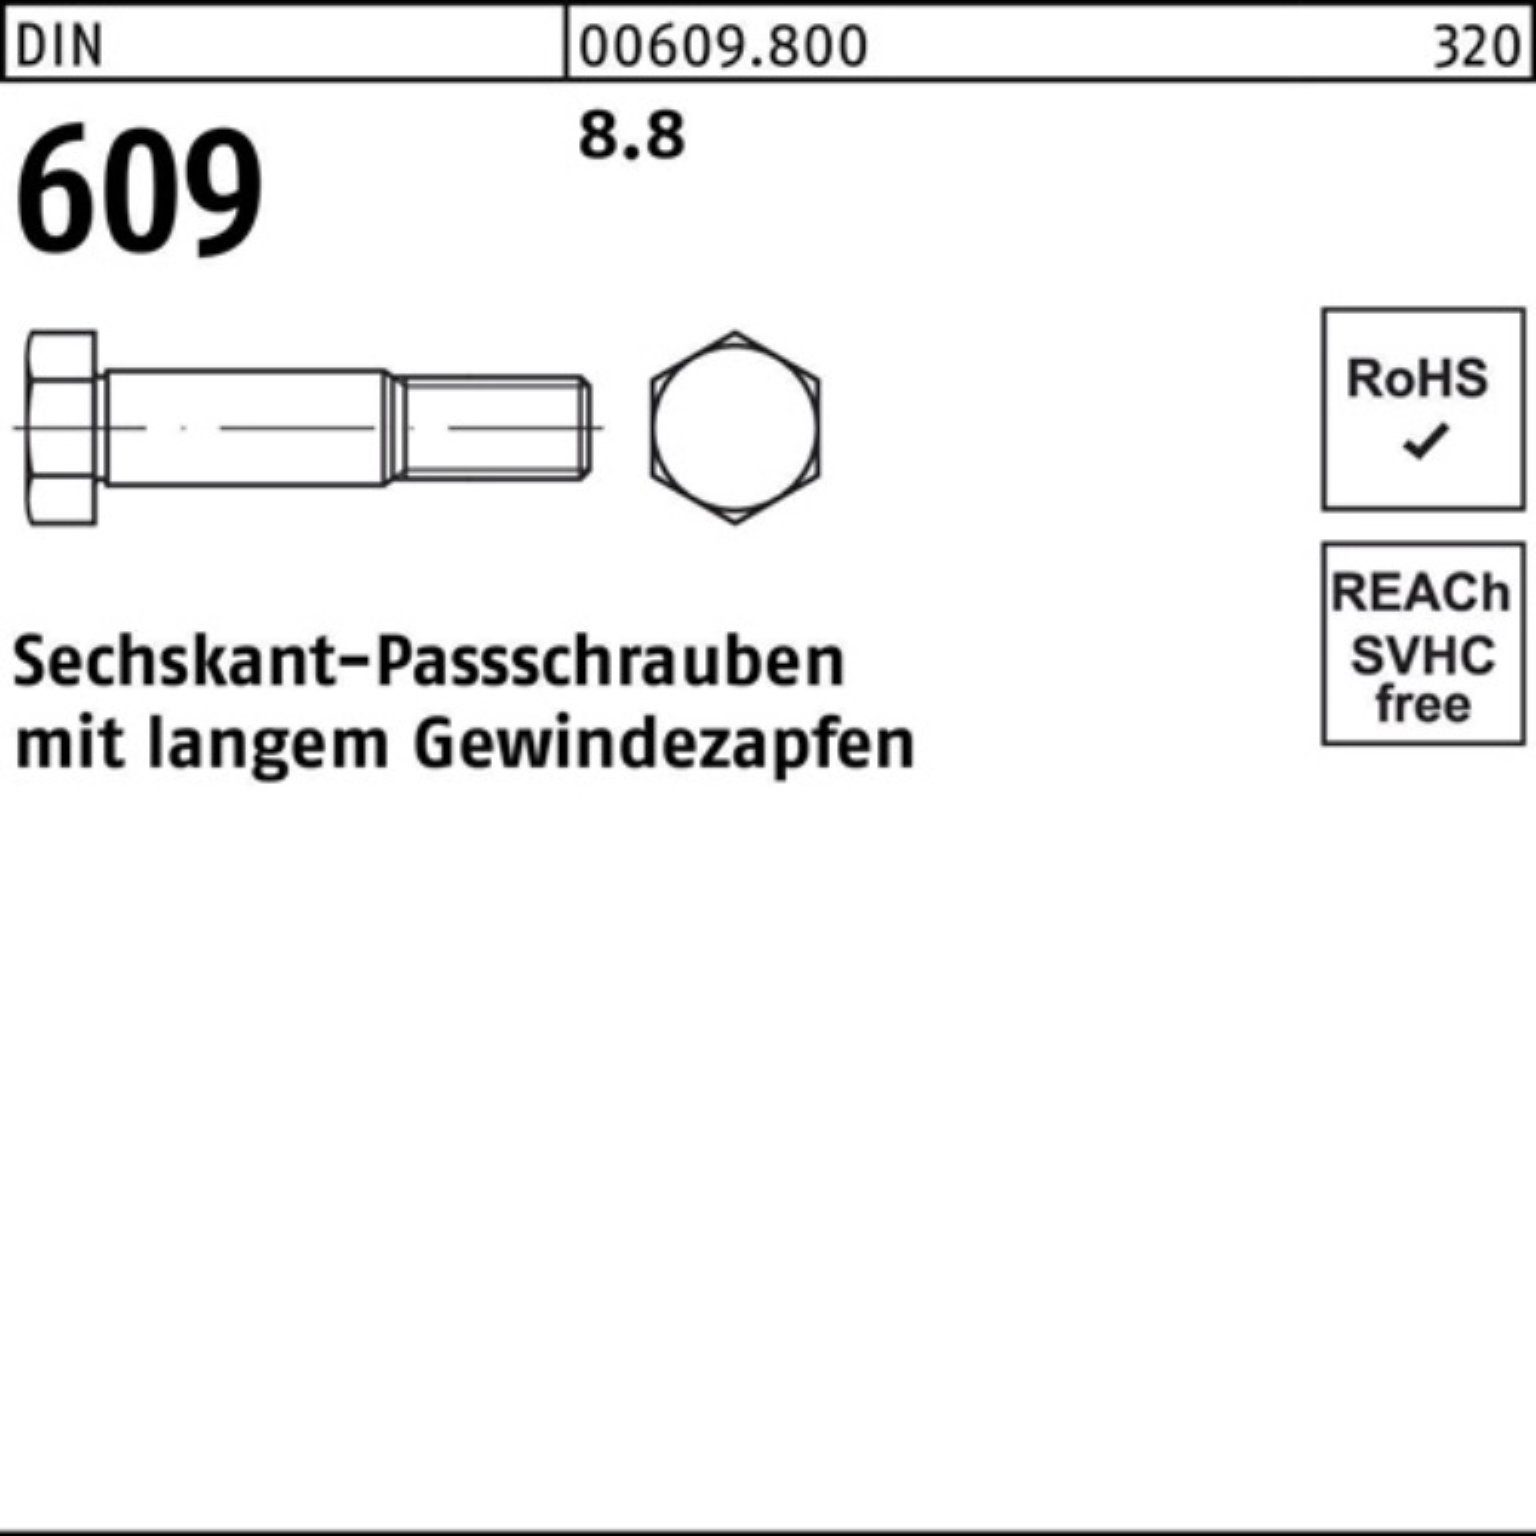 Reyher Schraube 100er M20x 609 langem DIN Pack Sechskantpassschraube 130 Gewindezapfen